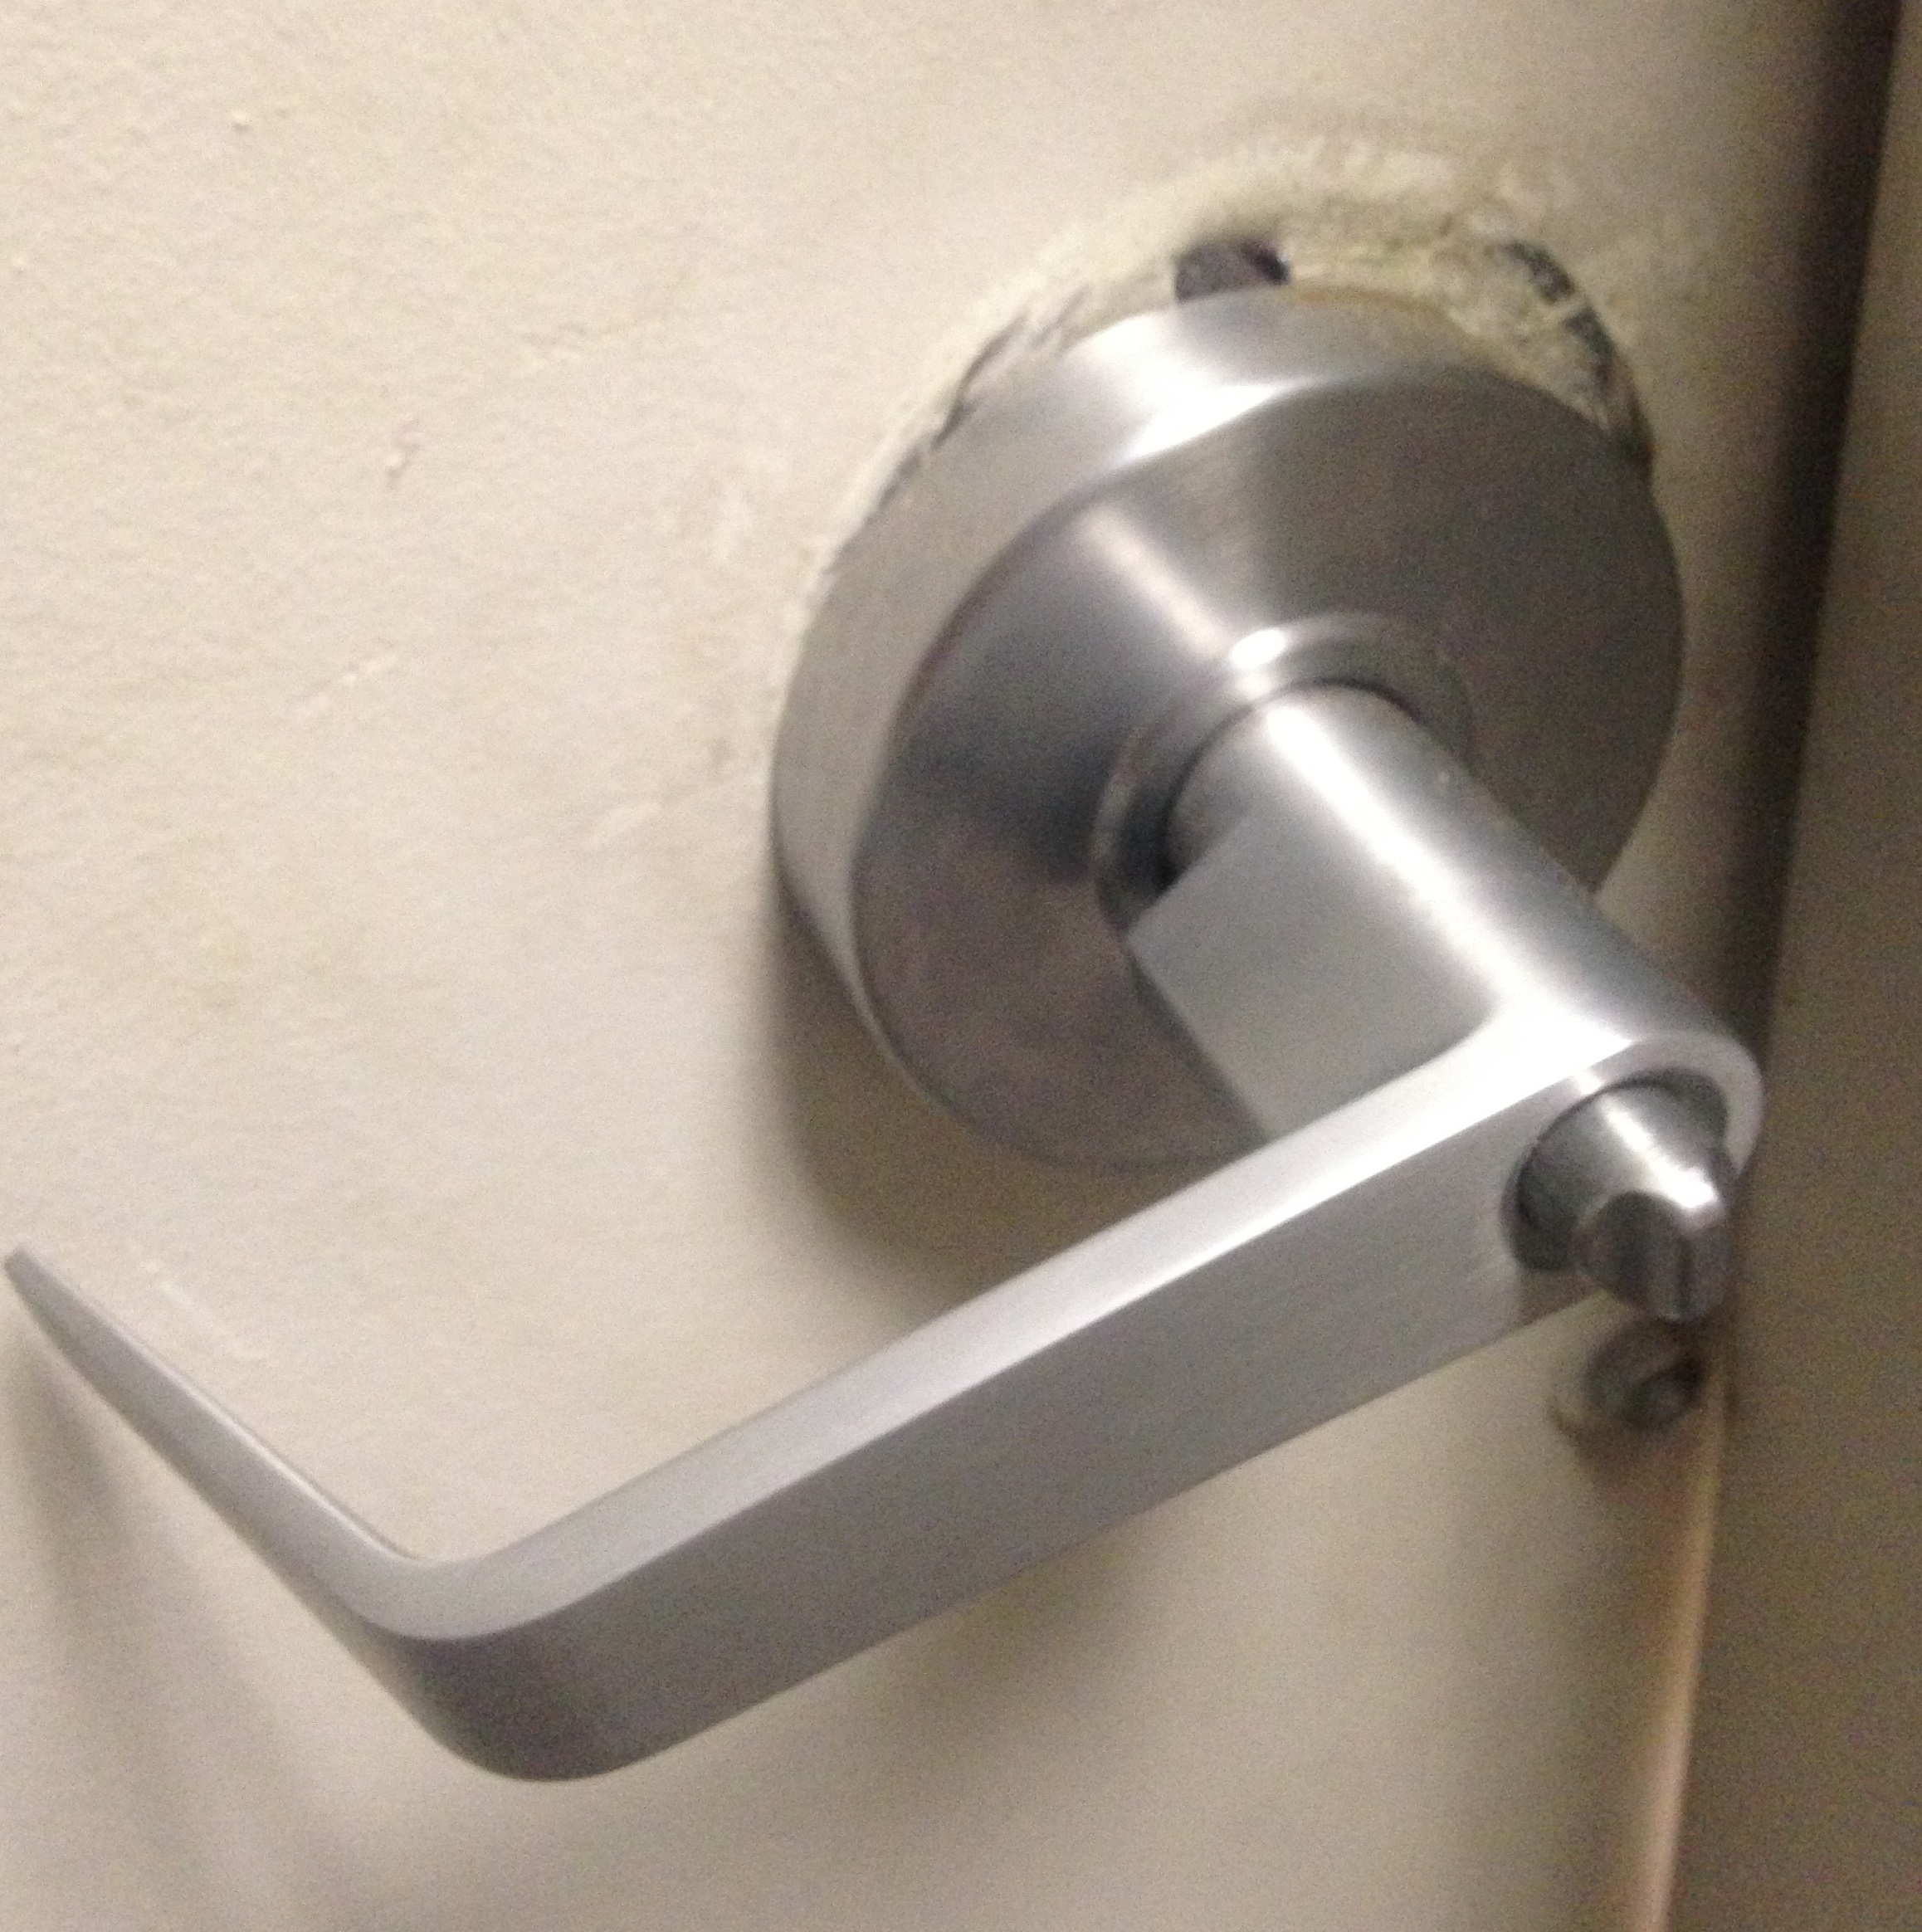 Broken/Worn out door handle.